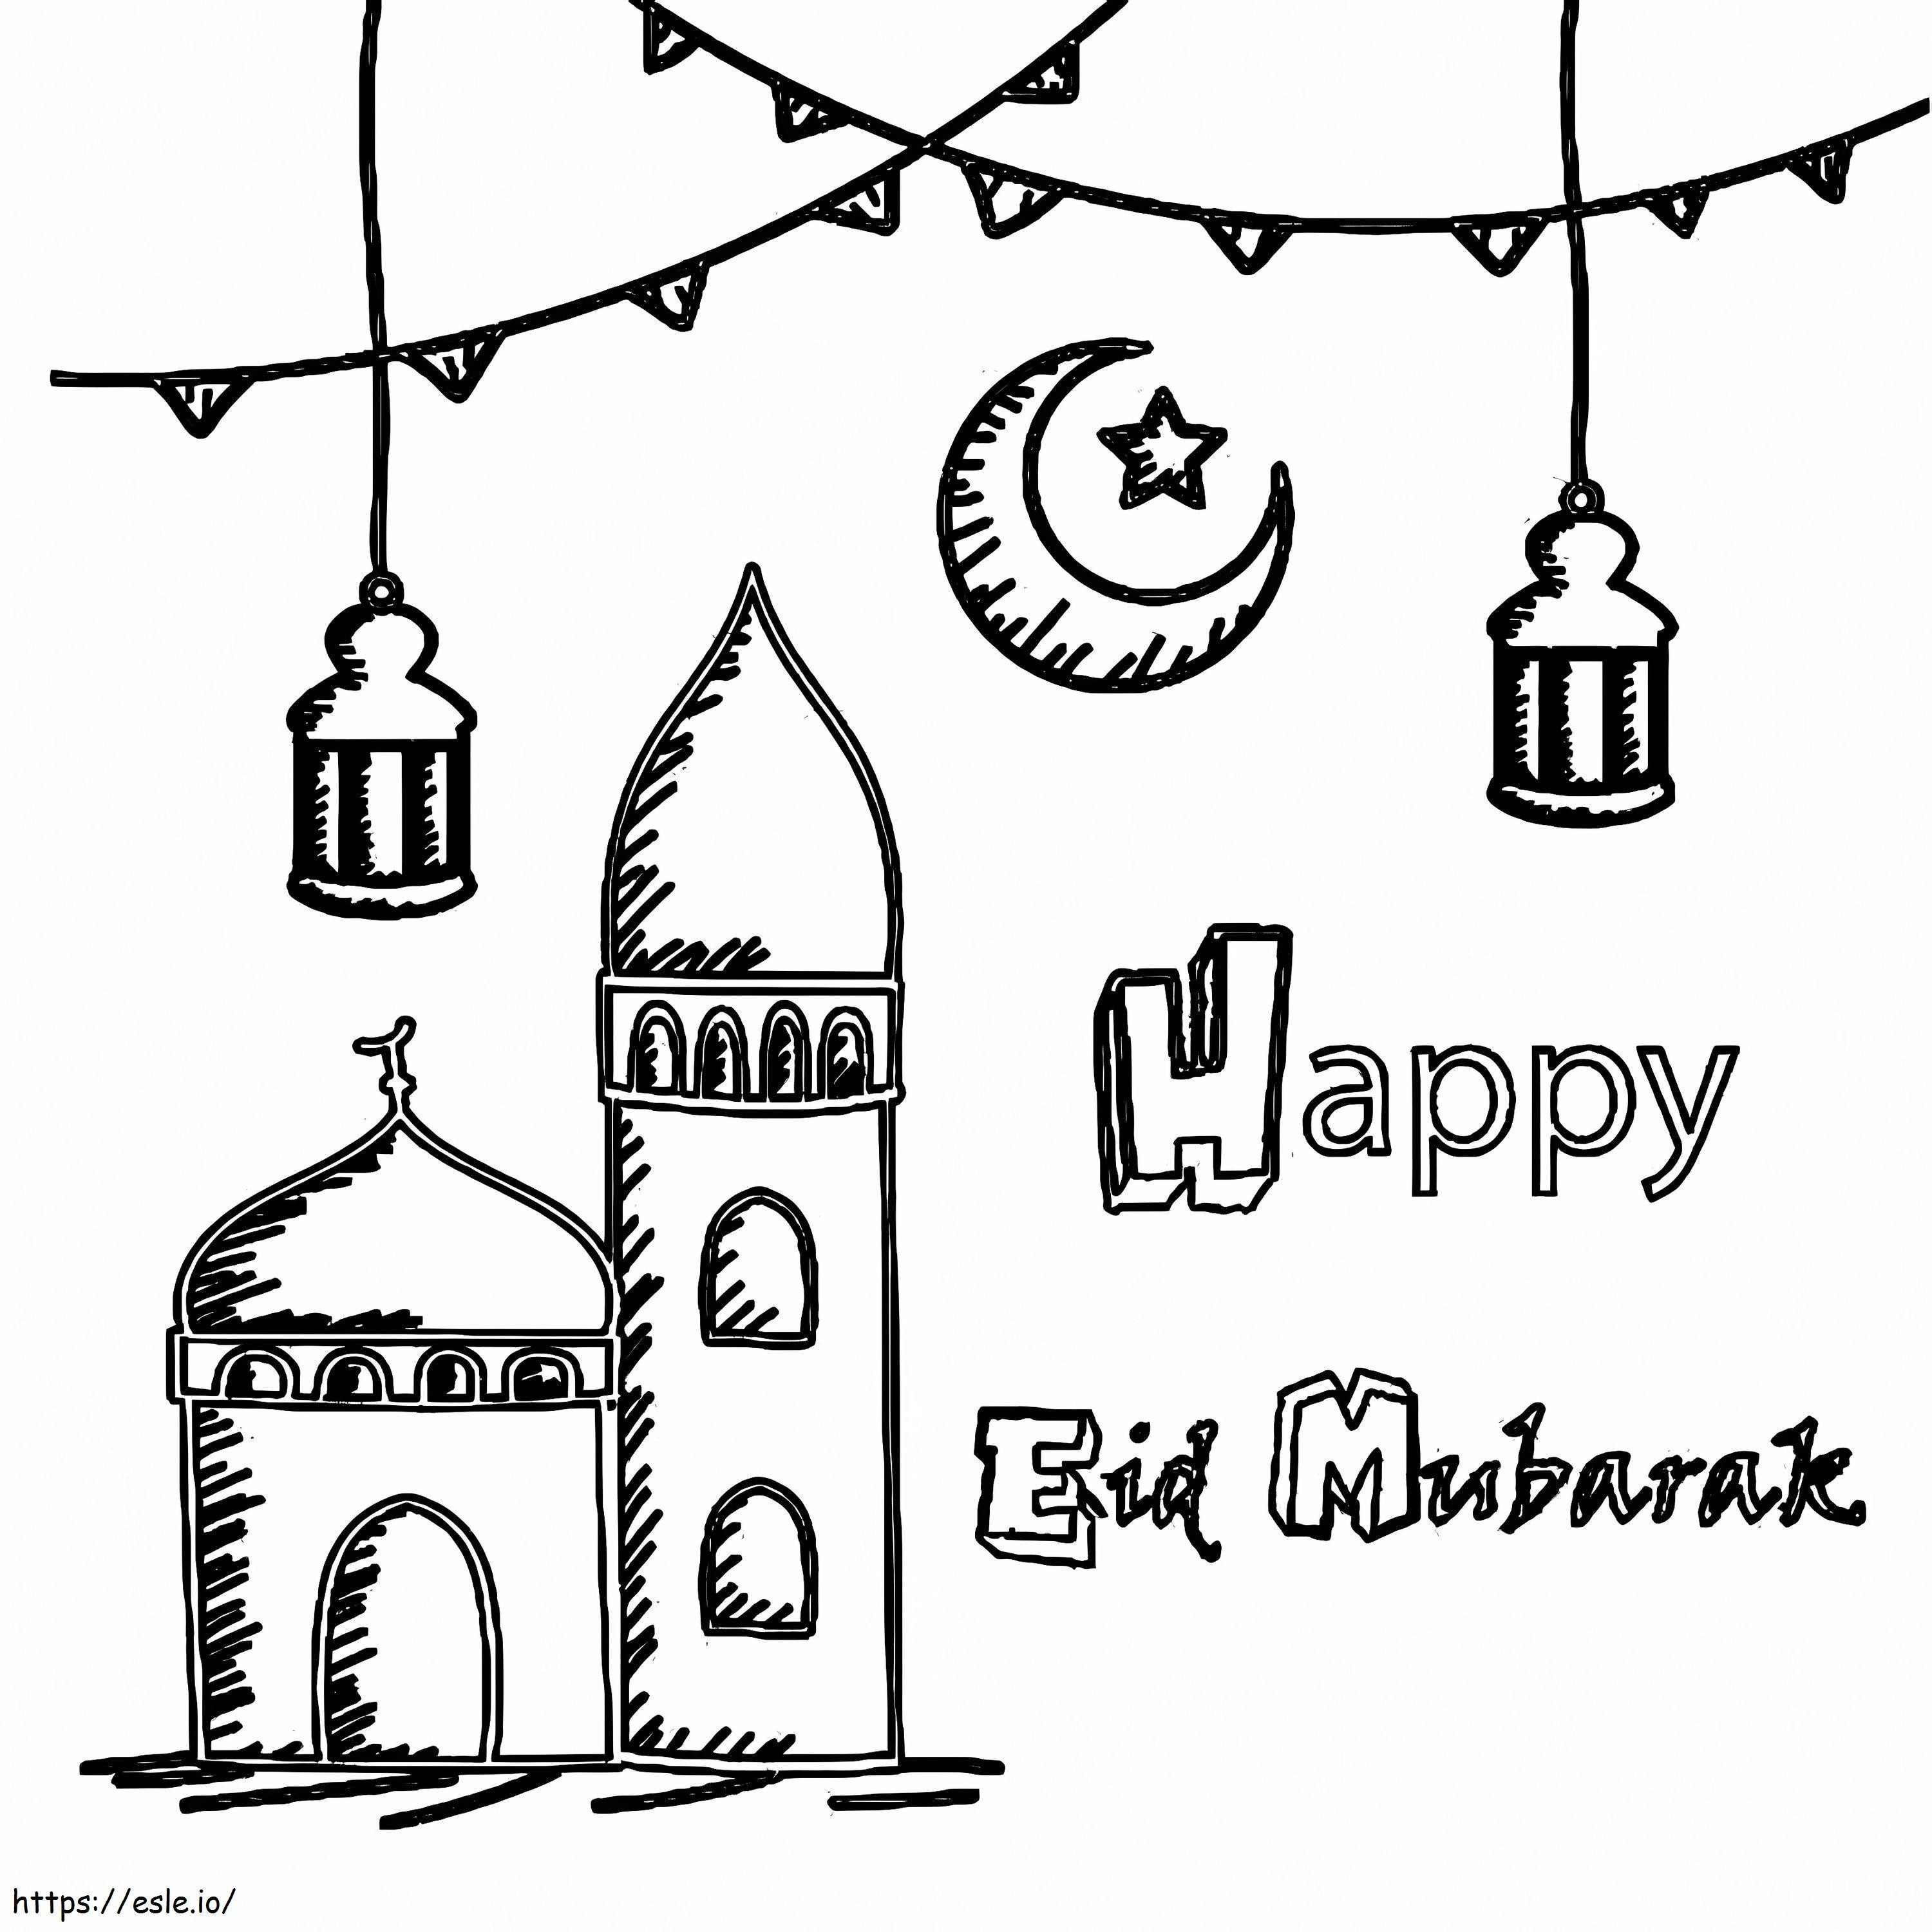 Fröhliches Eid Mubarak 1 ausmalbilder